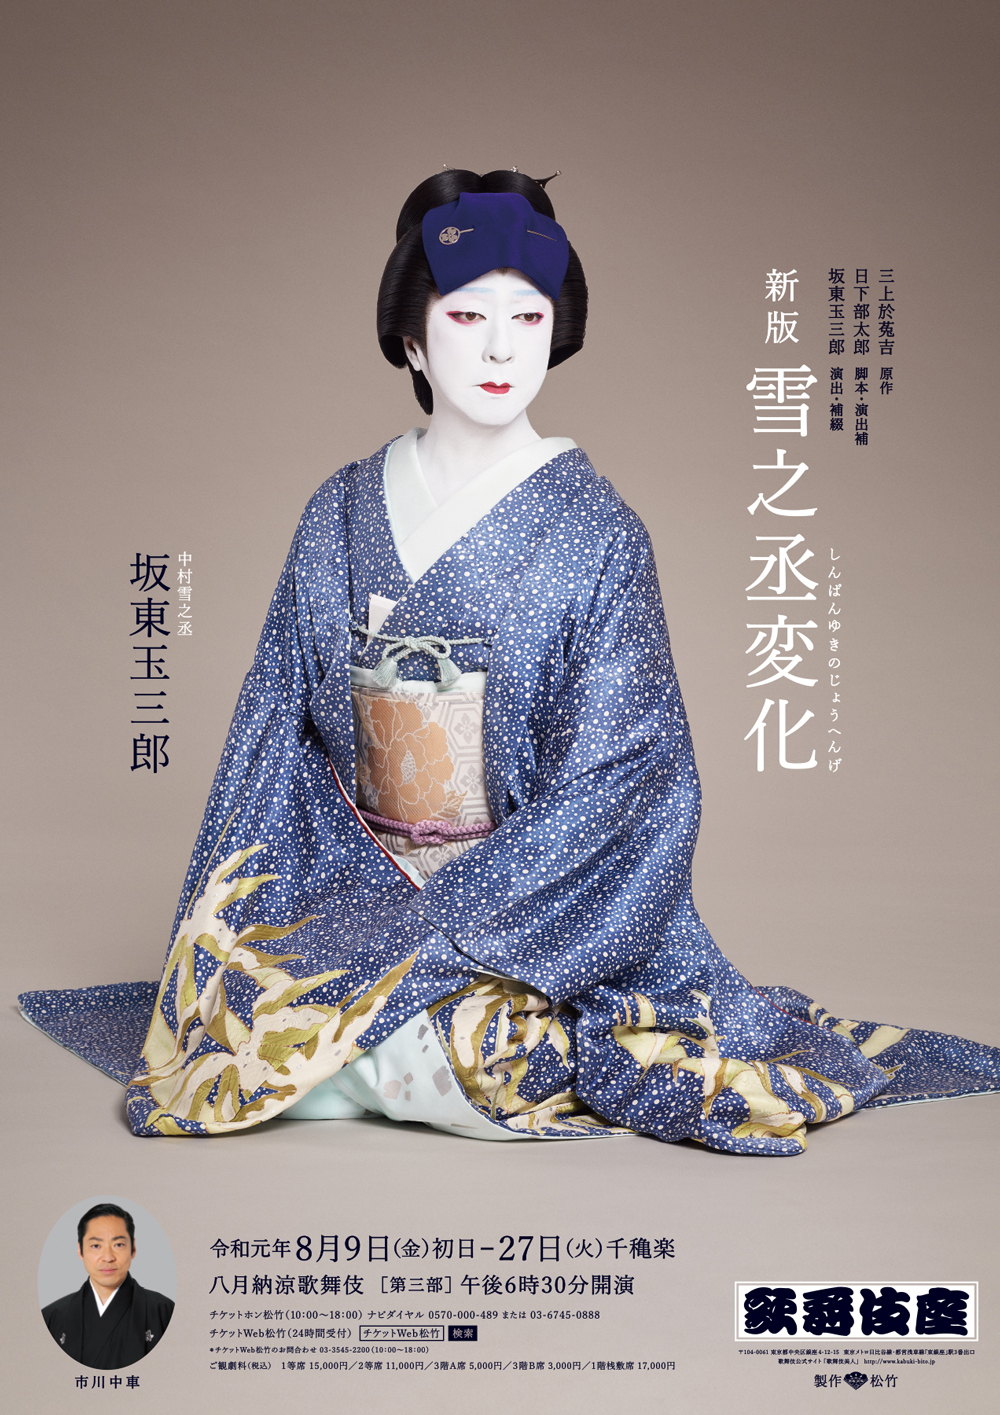 歌舞伎座「八月納涼歌舞伎」特別ポスター公開